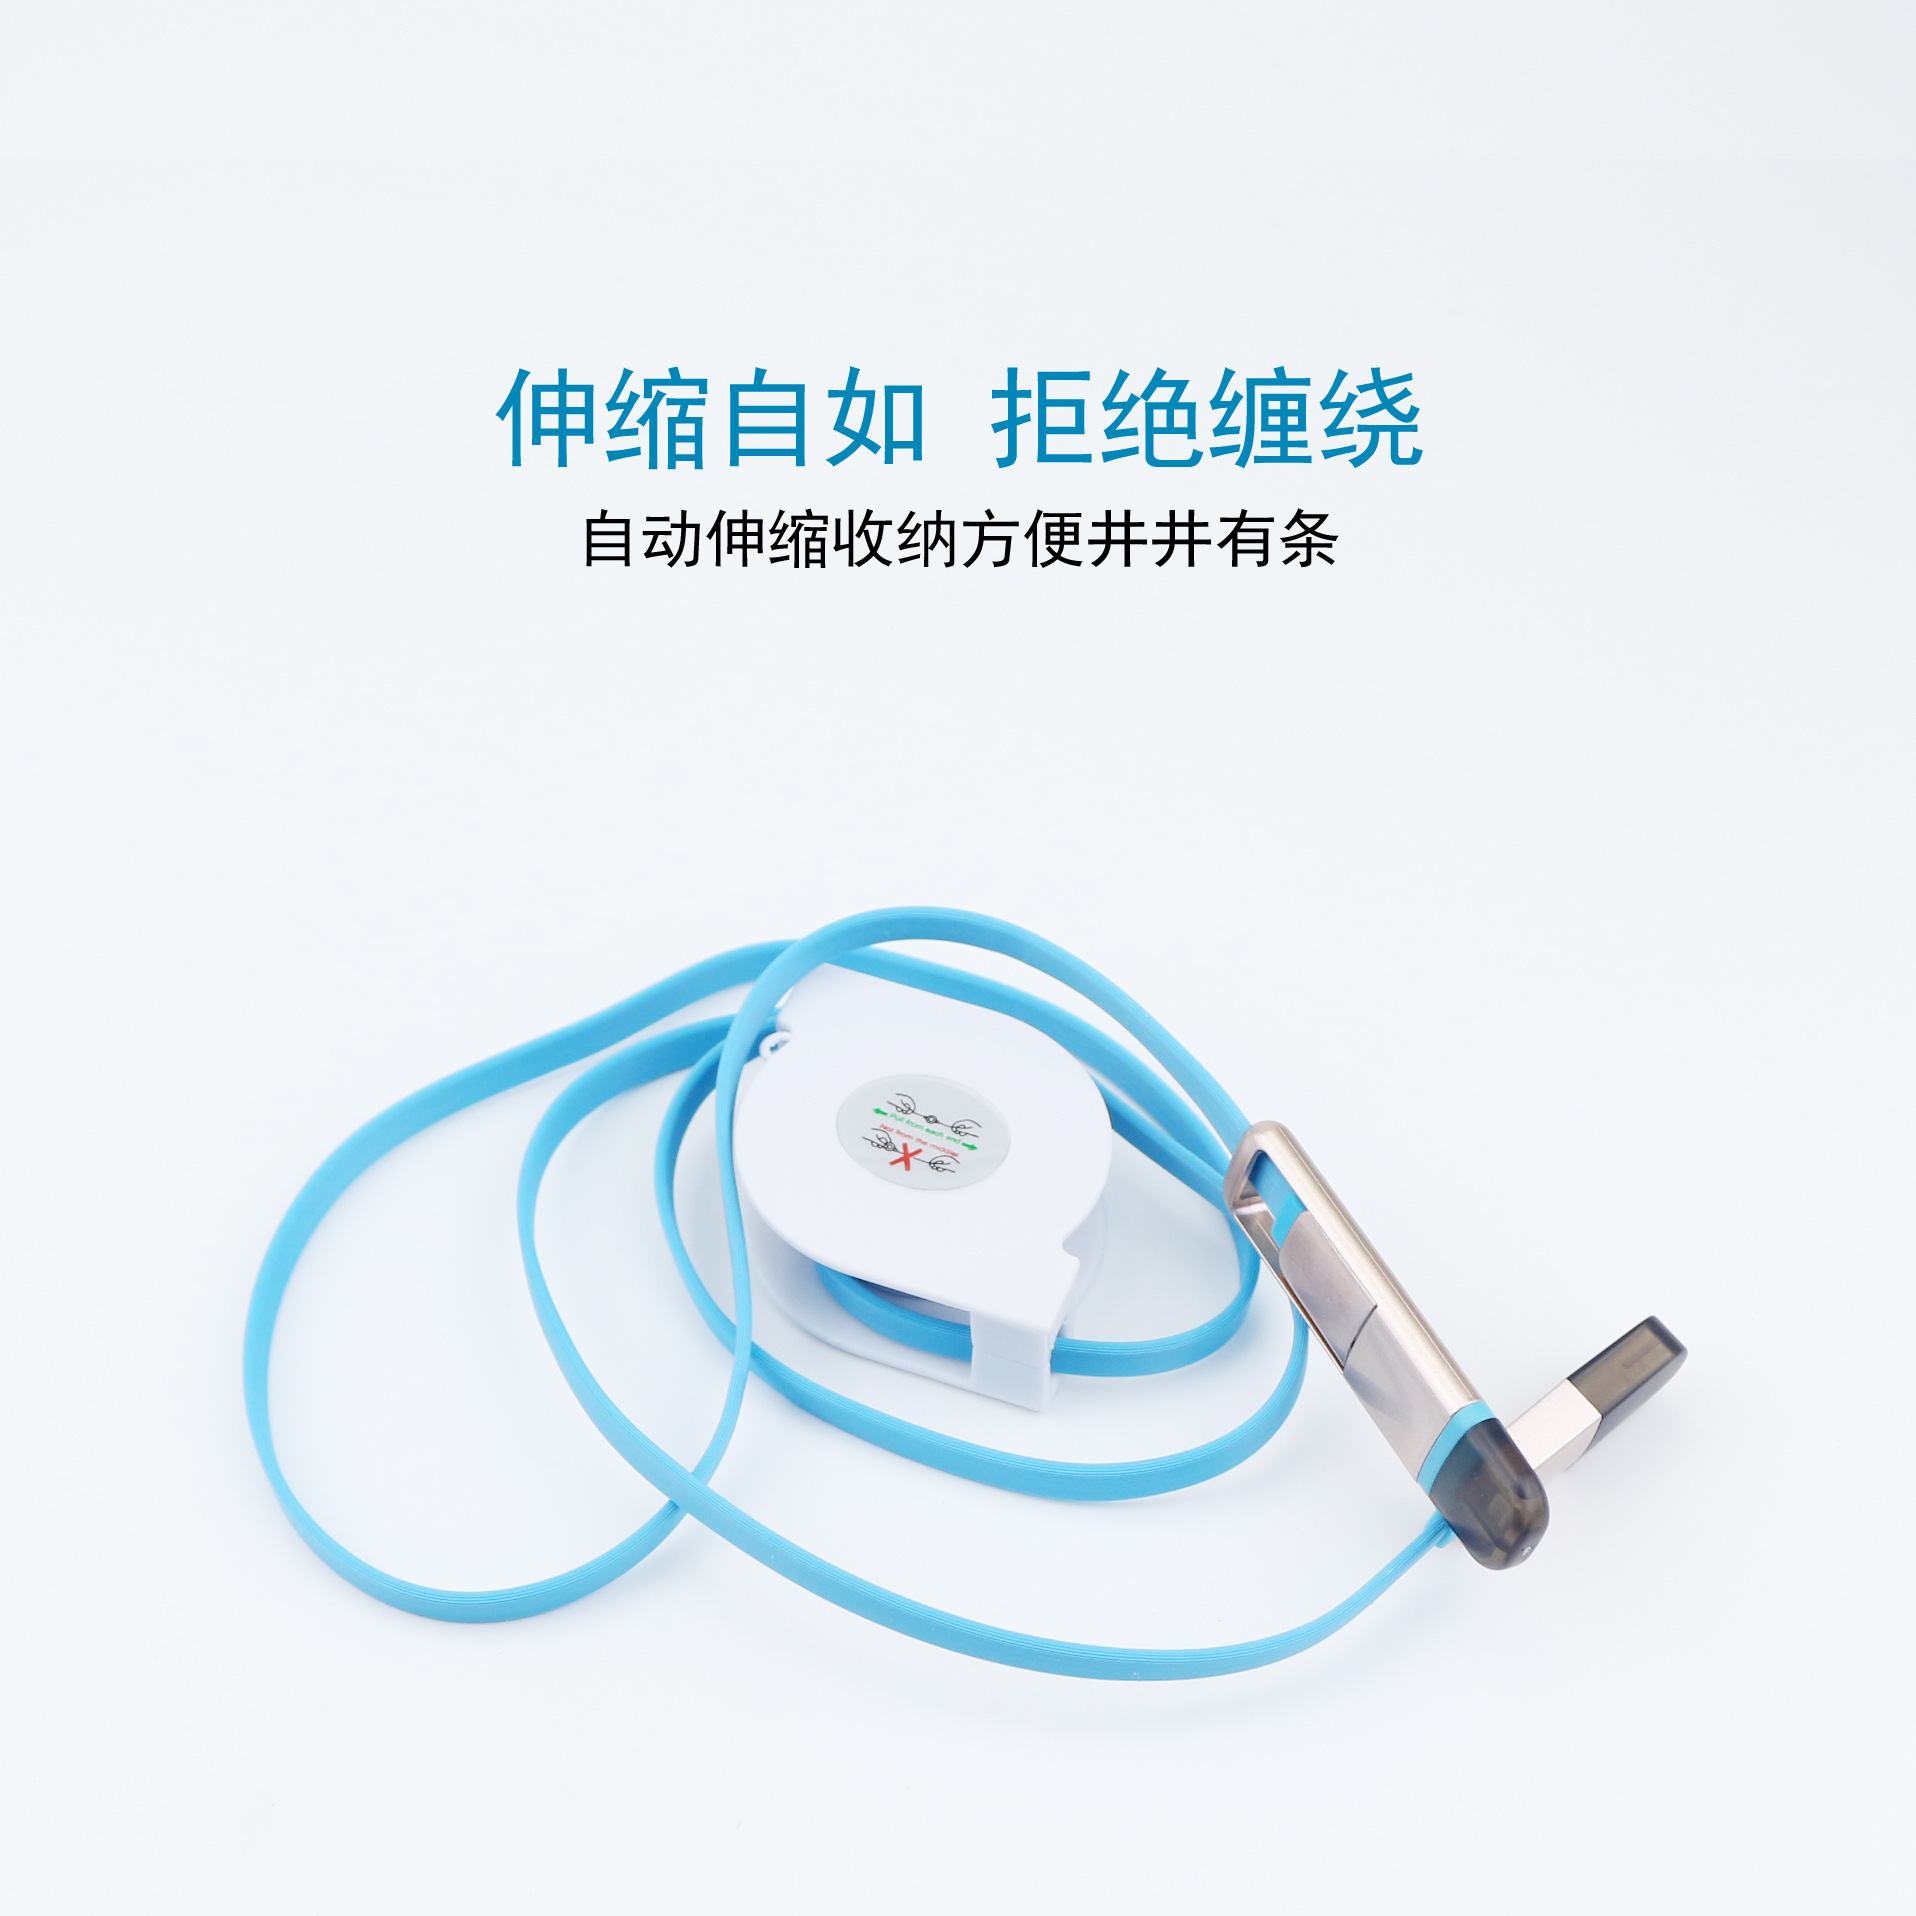 Câble adaptateur pour smartphone - Ref 3382716 Image 8